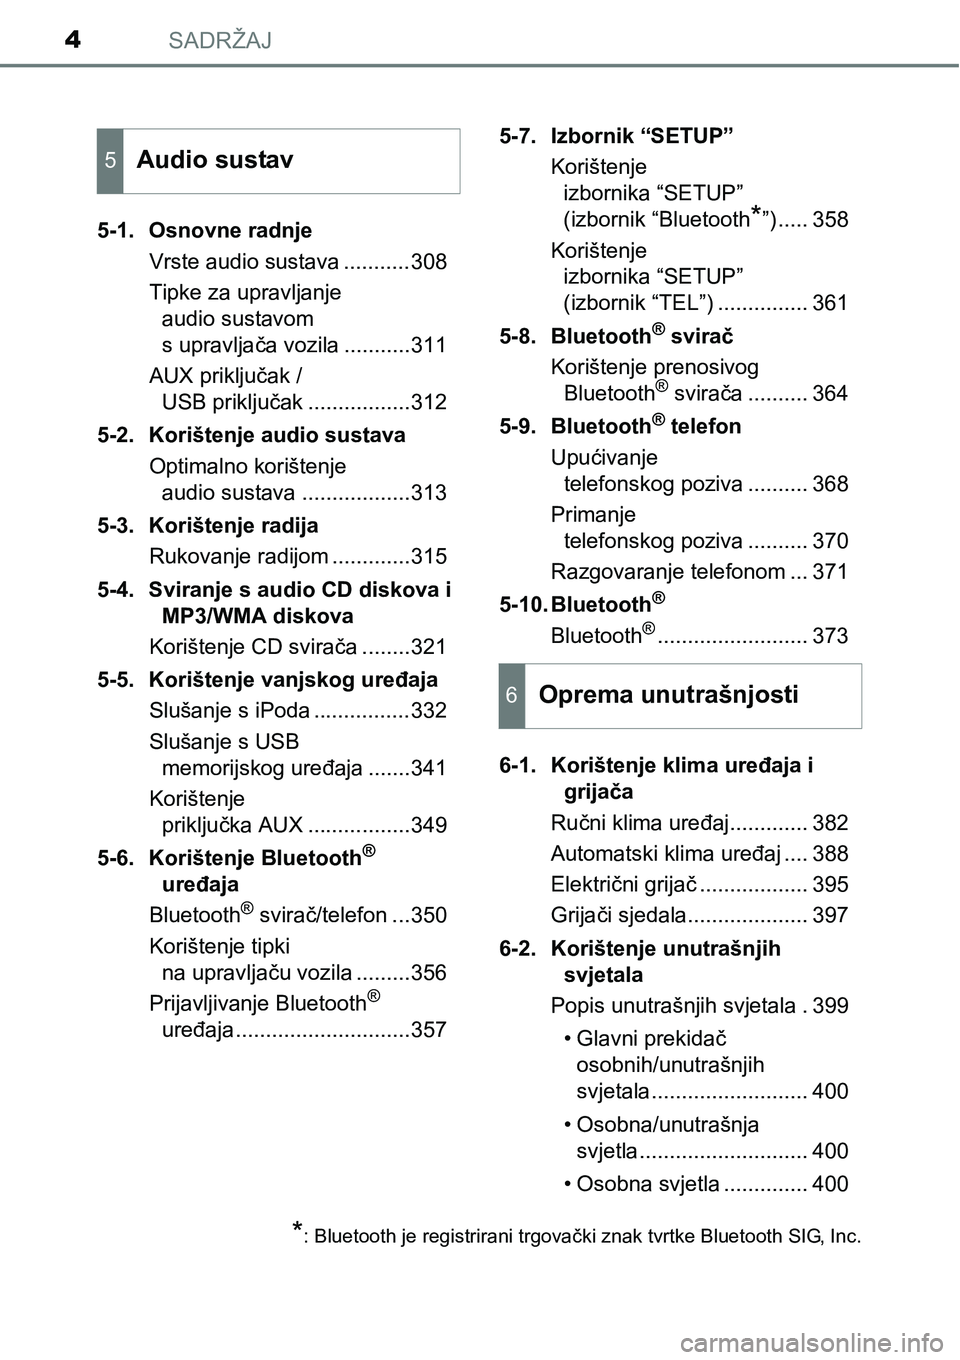 TOYOTA AVENSIS 2015  Upute Za Rukovanje (in Croatian) SADRŽAJ4
5-1. Osnovne radnje
Vrste audio sustava ...........308
Tipke za upravljanje 
audio sustavom 
s upravljača vozila ...........311
AUX priključak / 
USB priključak .................312
5-2. 